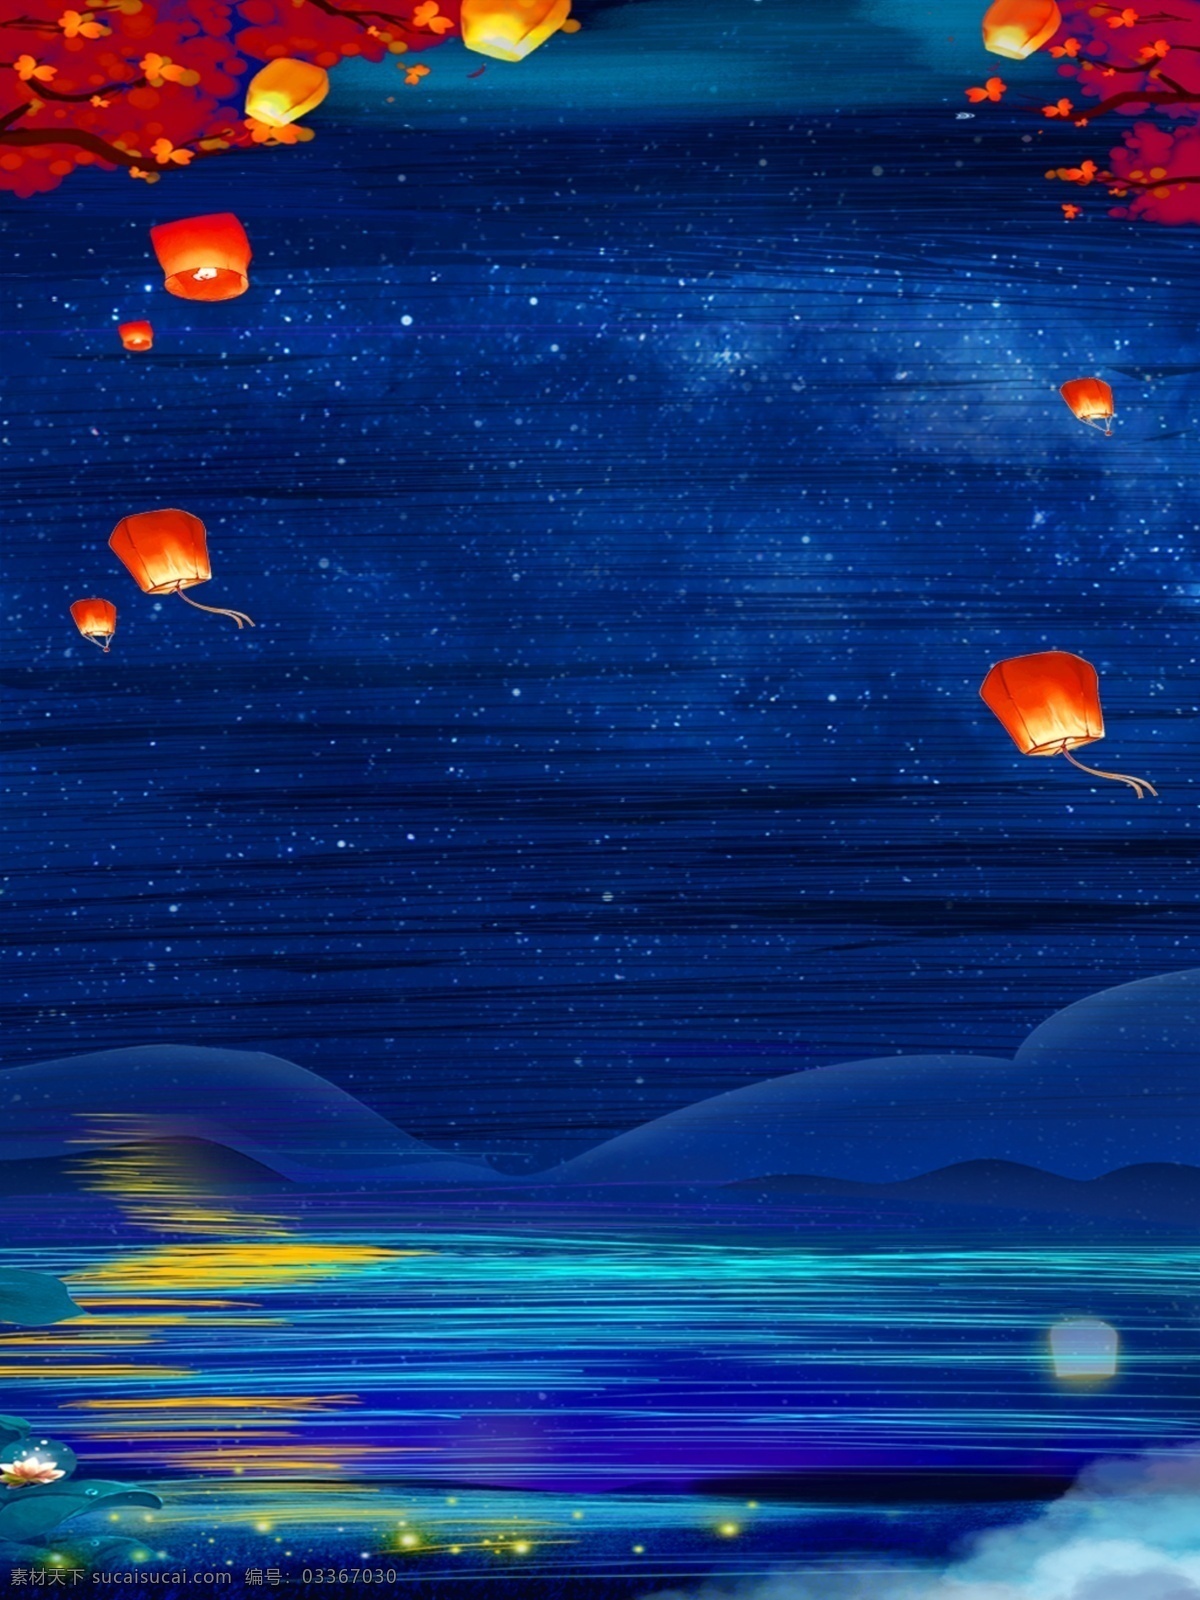 蓝色 夜空 下 红梅 孔明灯 江水 广告 背景 广告背景